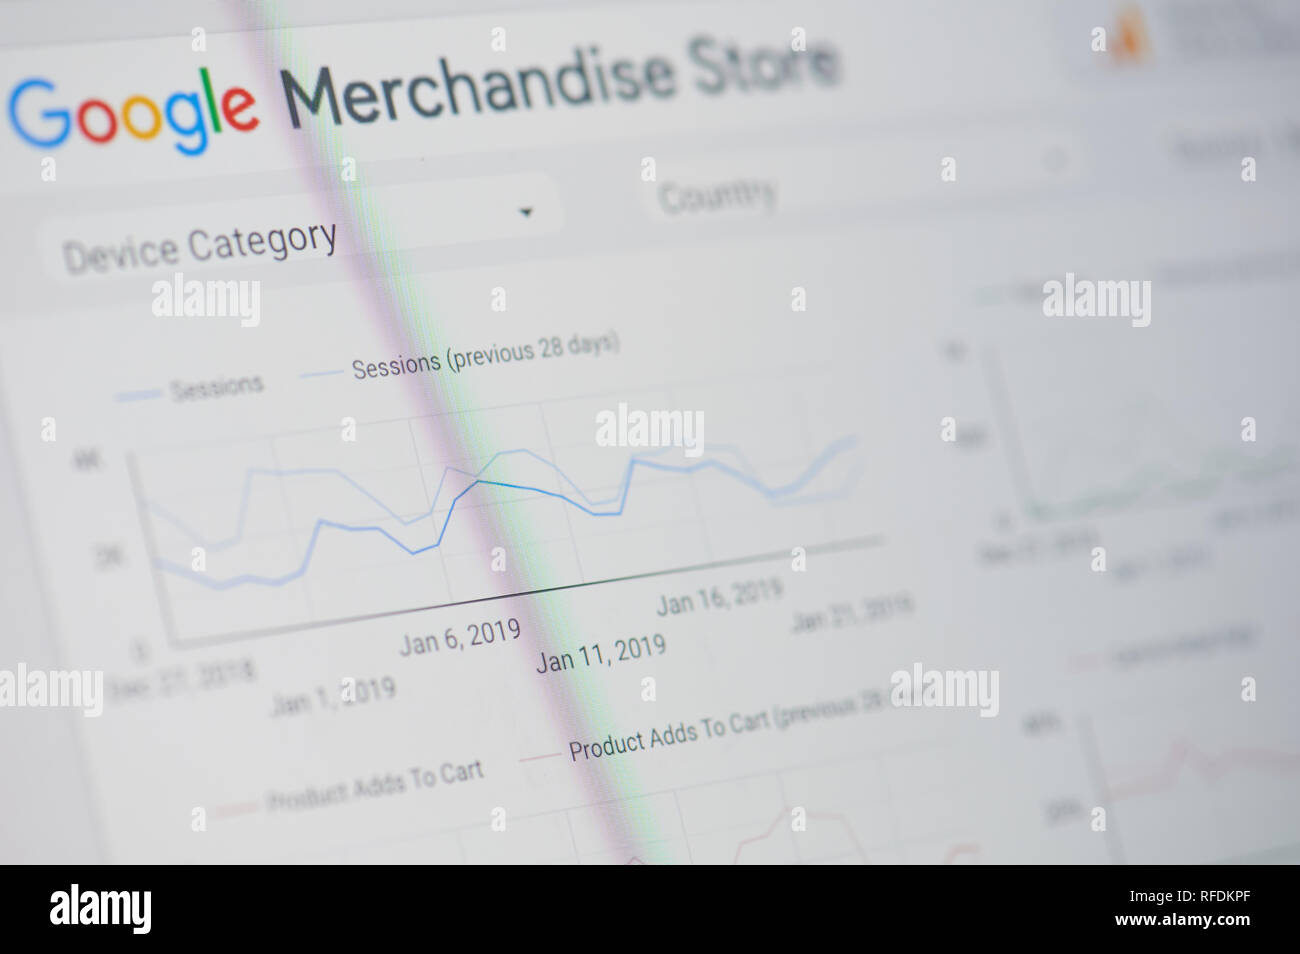 New York, USA - Januar 24, 2019: Google Merchandise Store Menü auf das Gerät mit dem Bildschirm pixelated Nähe zu sehen. Stockfoto